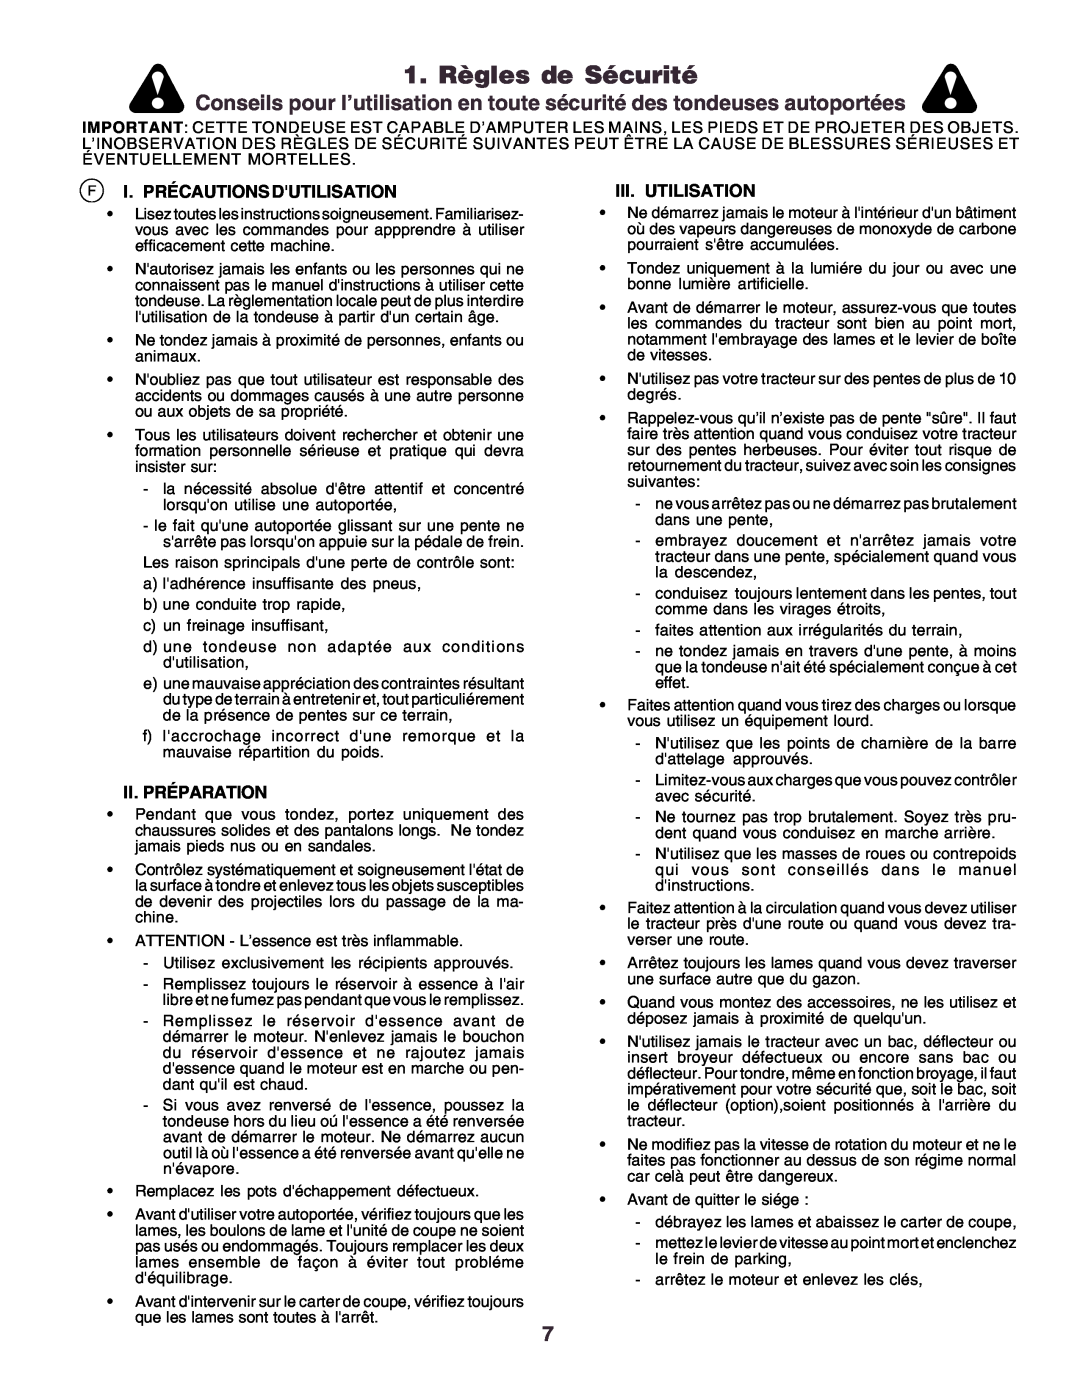 Husqvarna CT160 instruction manual 1. Règles de Sécurité, Fi. Précautions Dutilisation, Ii.Préparation, Iii.Utilisation 